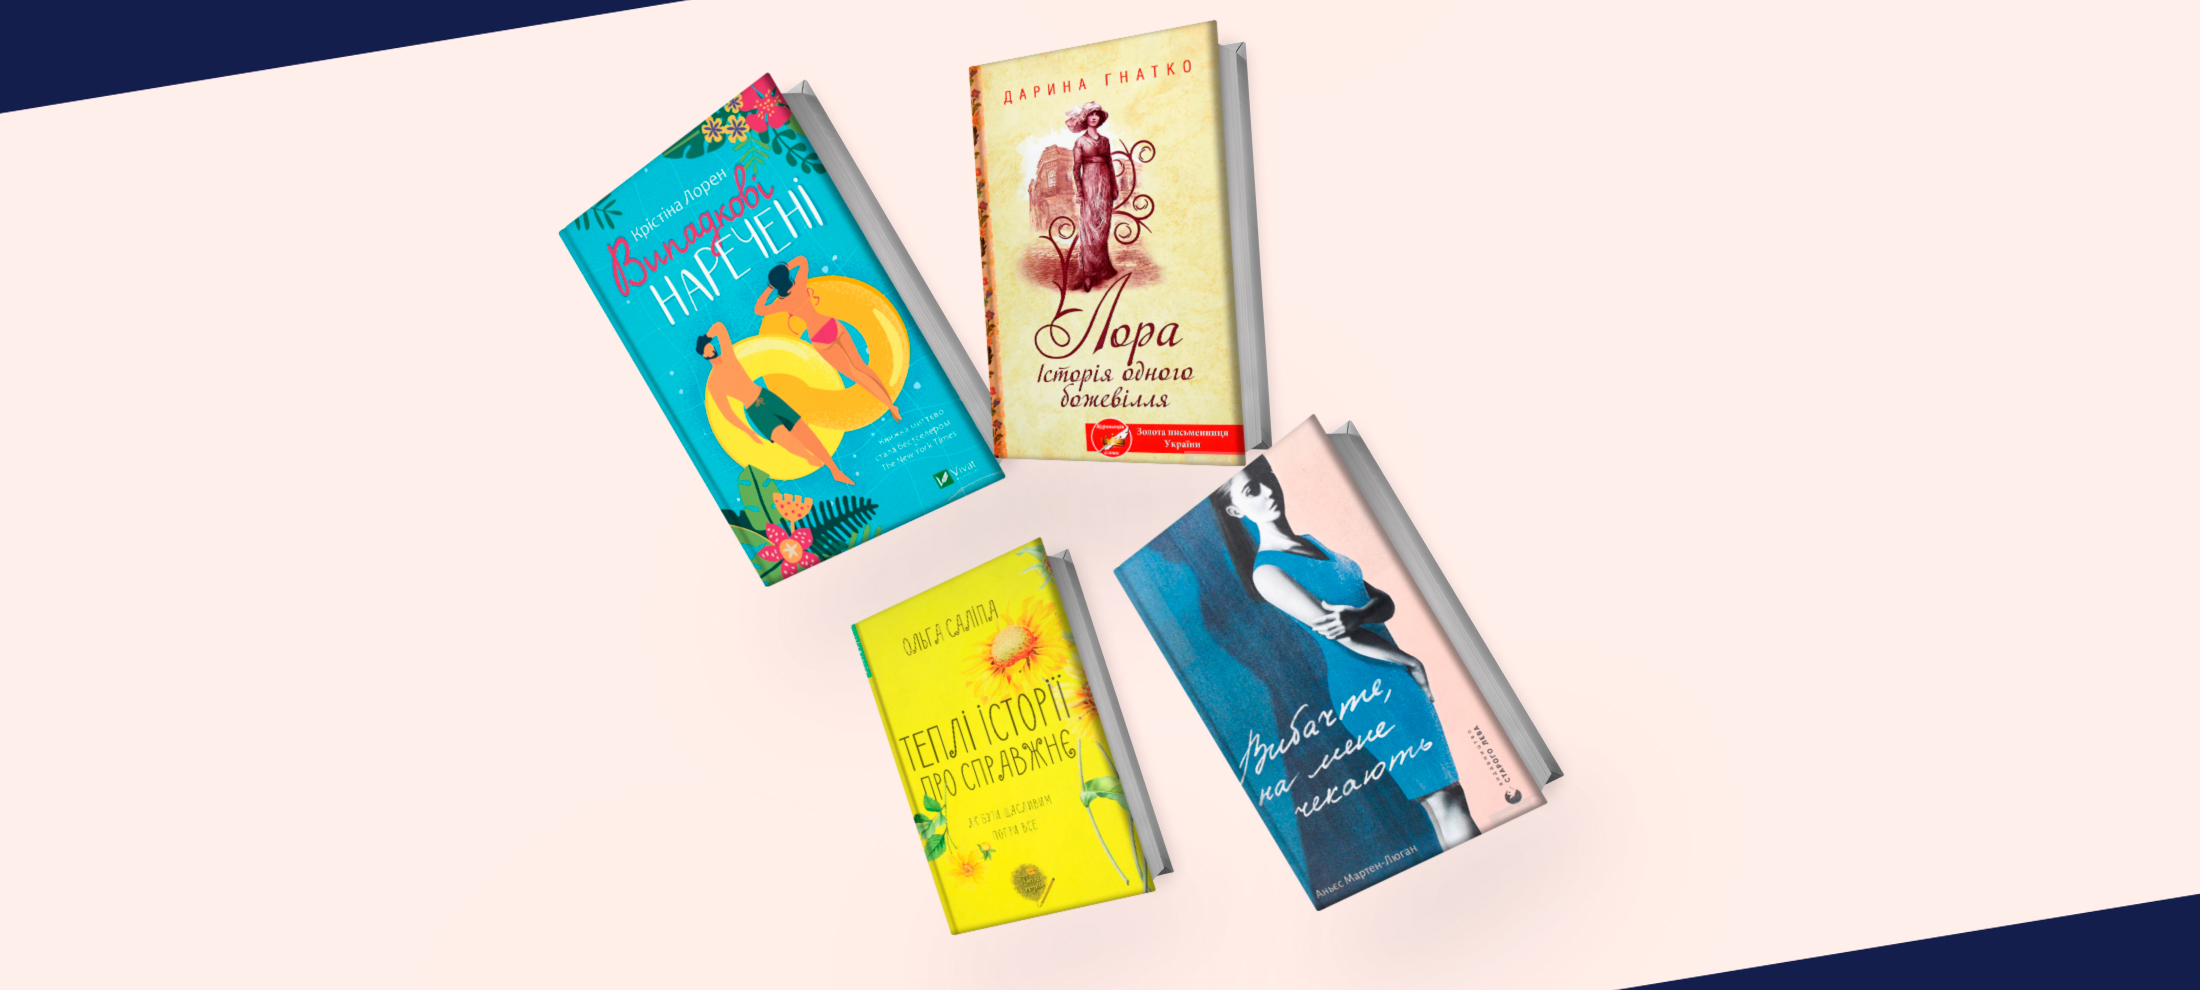 «Випадкові наречені», «Бунгало» та «Сафарі на щастя»: 10 любовних романів, які варто прочитати під час відпустки 0